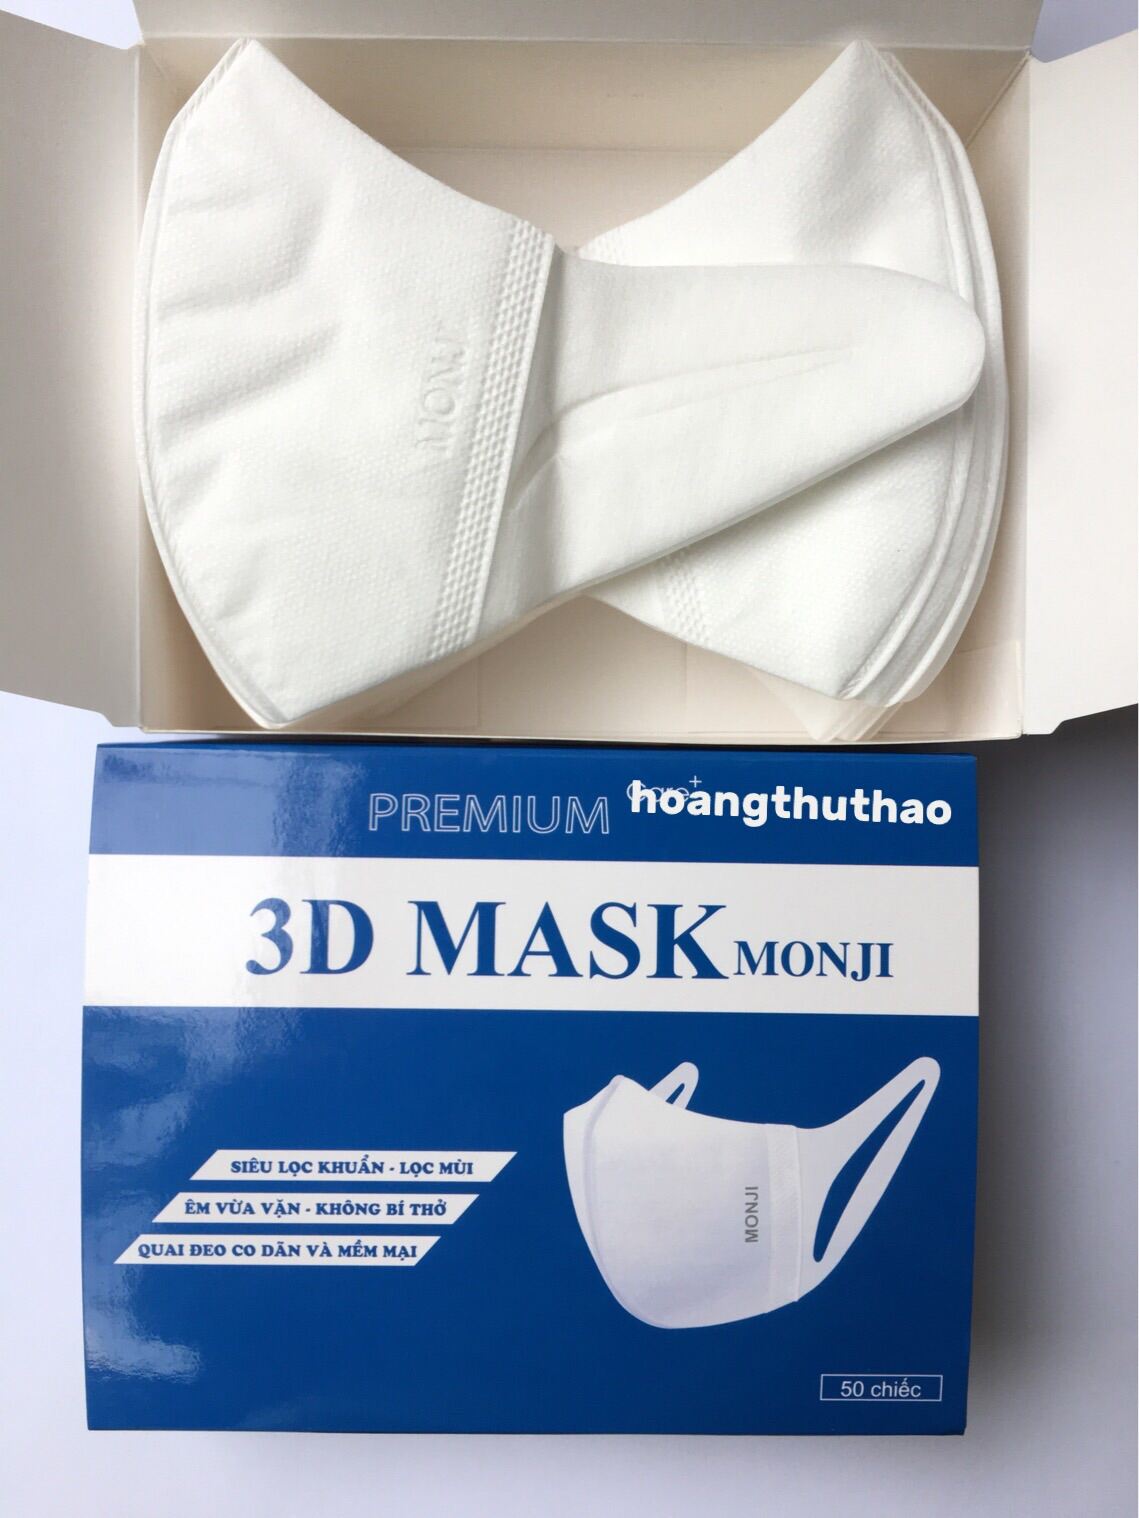 [Hàng chuẩn công ty] Hộp 50 chiếc khẩu trang 3D Mask Monij kháng khuẩn nhập khẩu